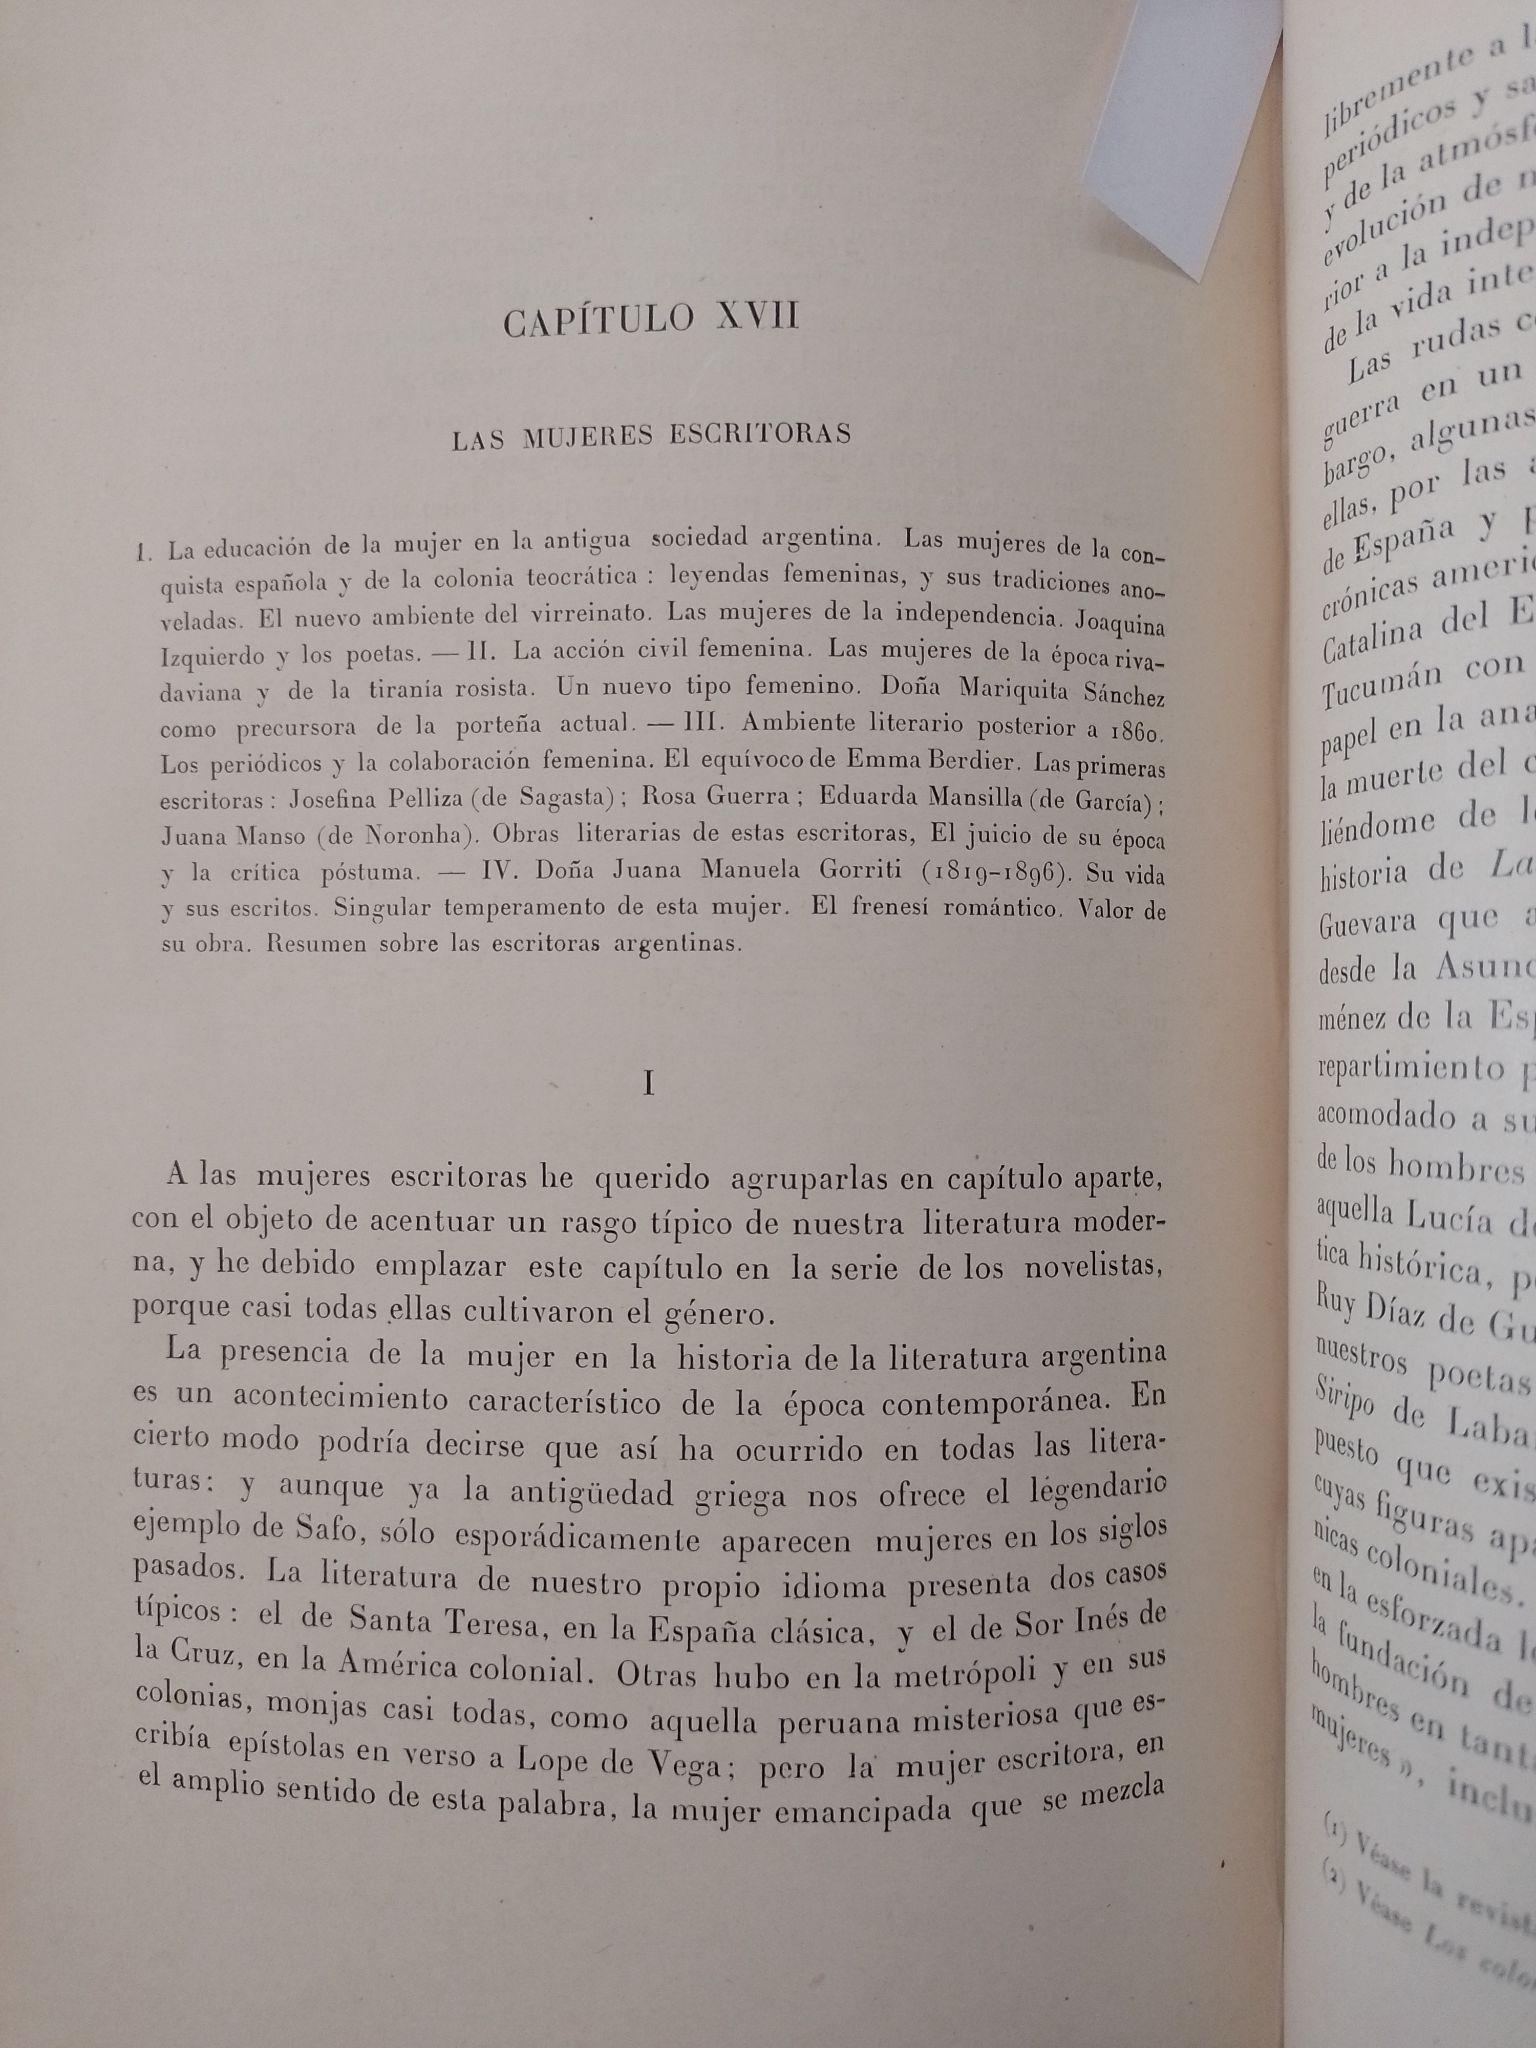 Historia de la Literatura Argentina, Ricardo Rojas